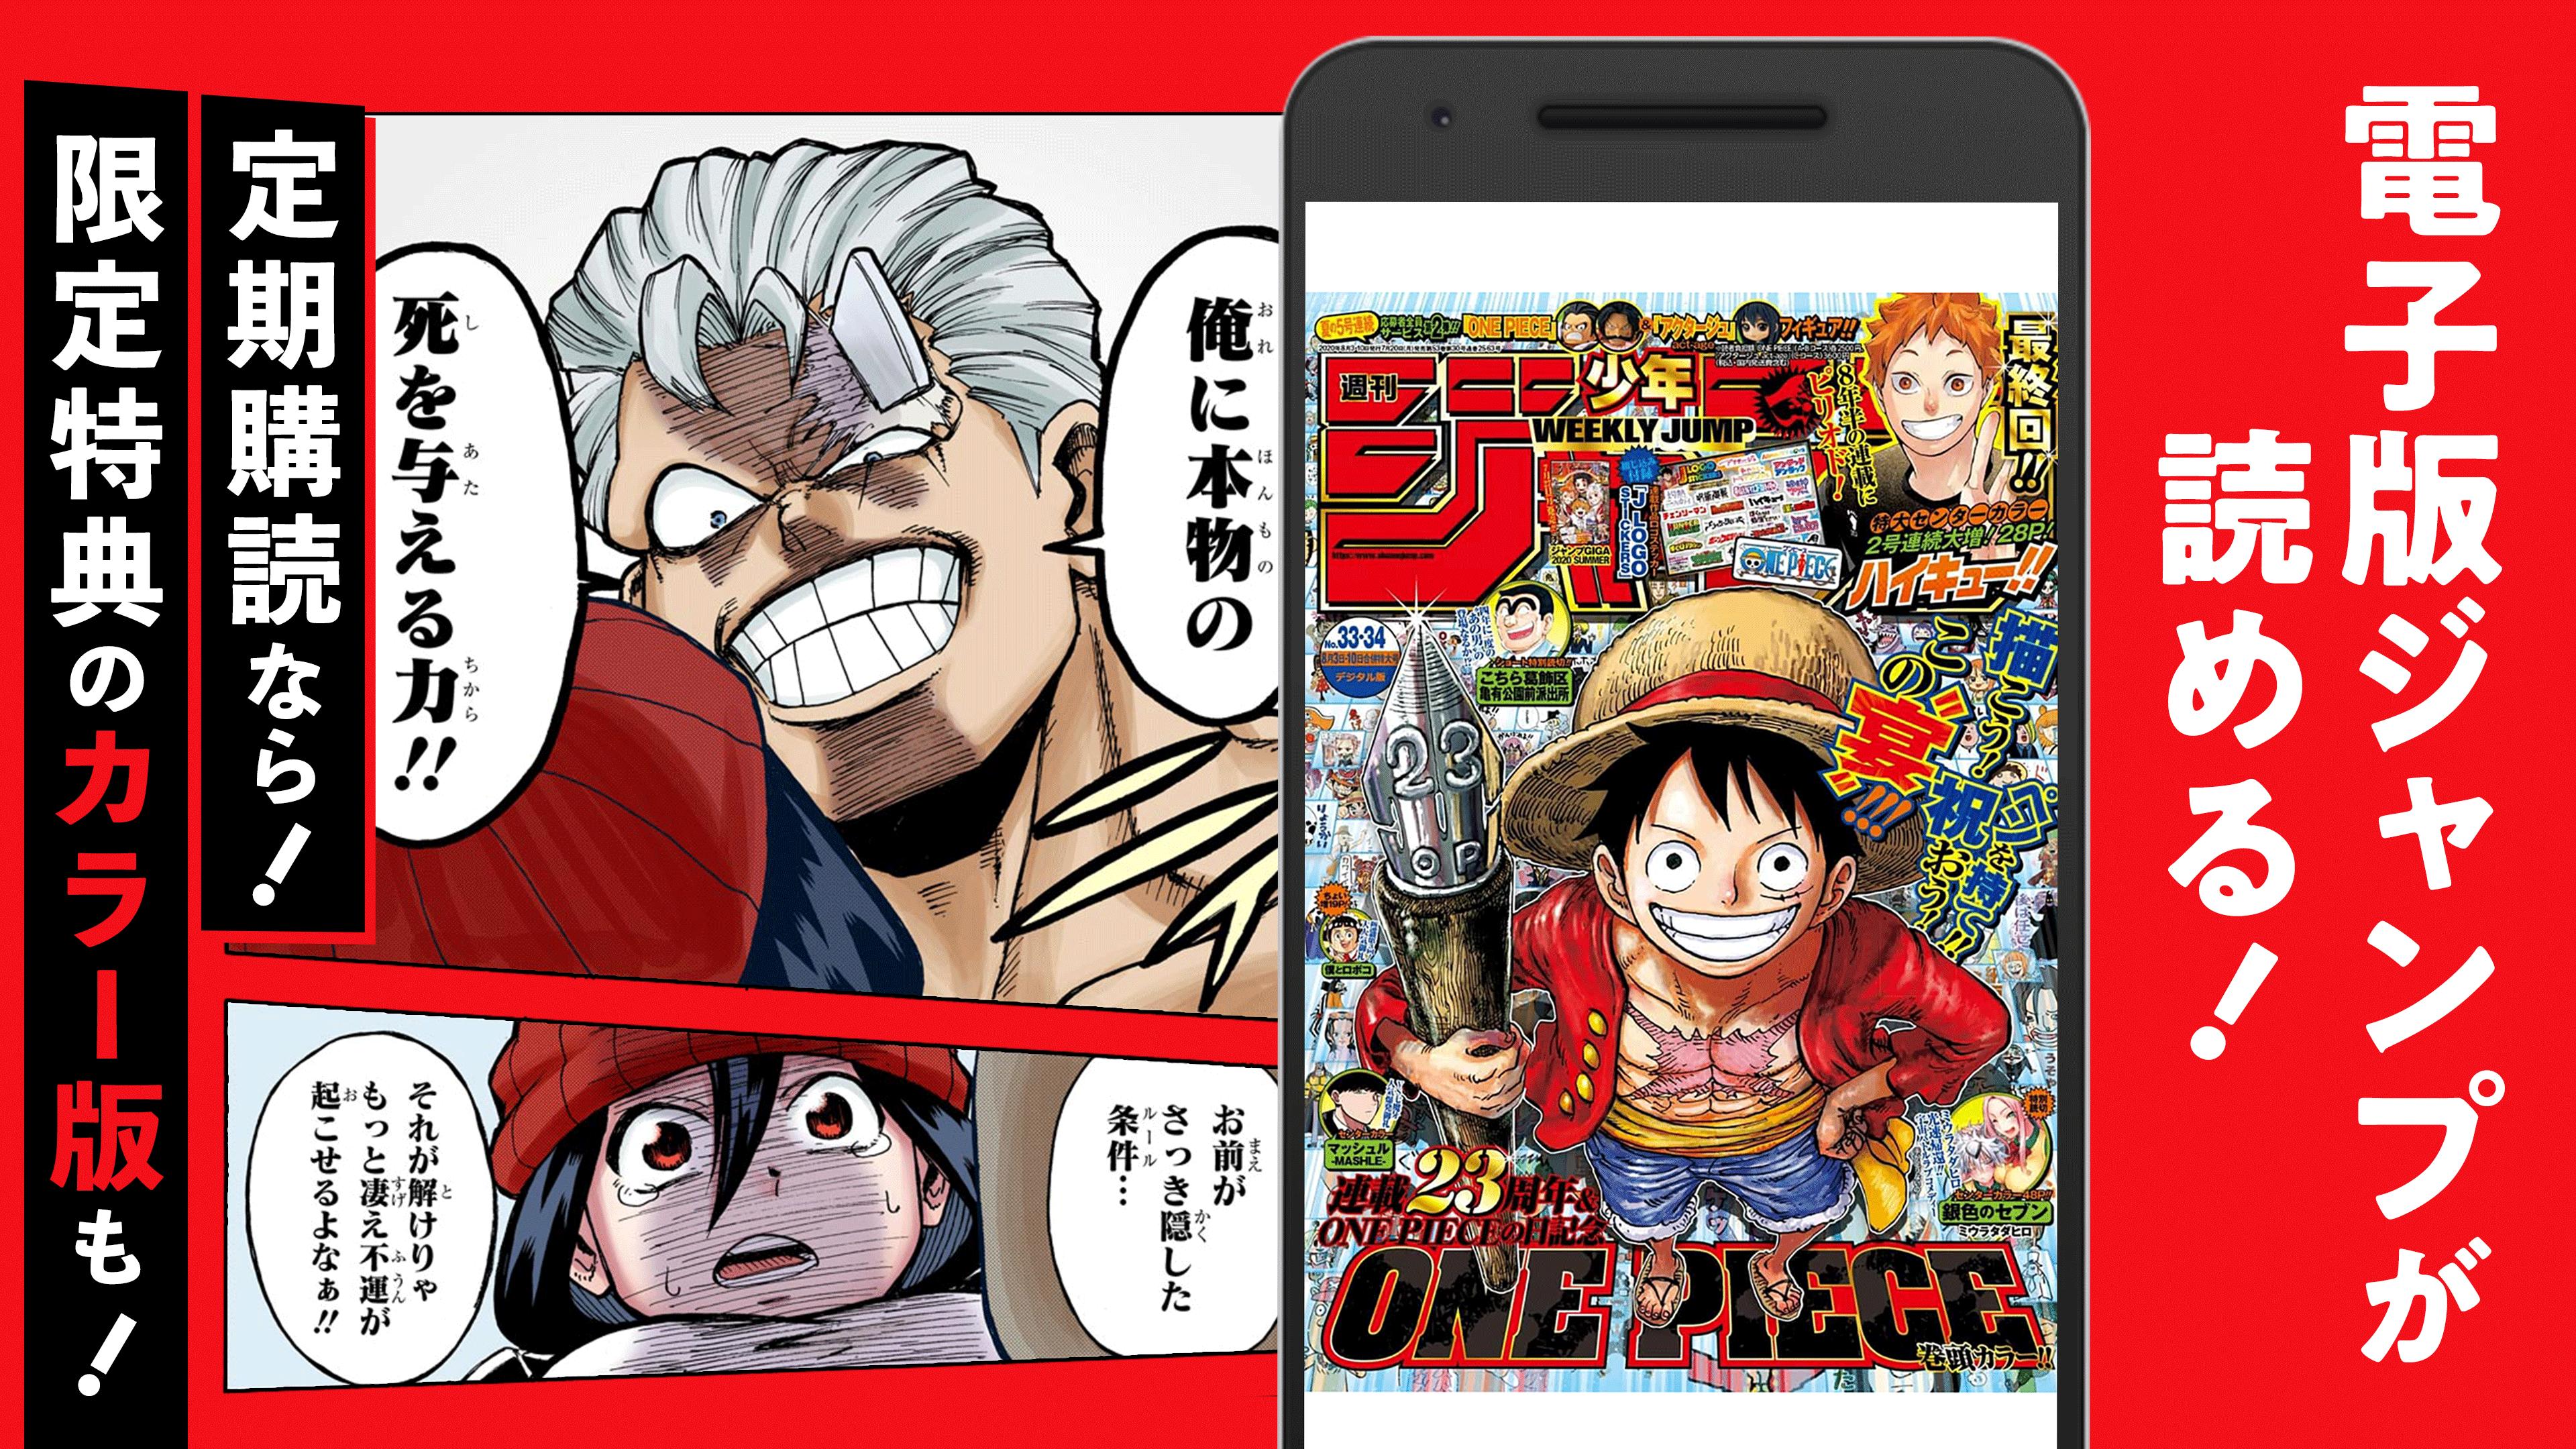 少年ジャンプ 最強人気オリジナルマンガや電子書籍 アニメ原作コミックが無料で毎日更新の漫画雑誌アプリ Para Android Apk Baixar